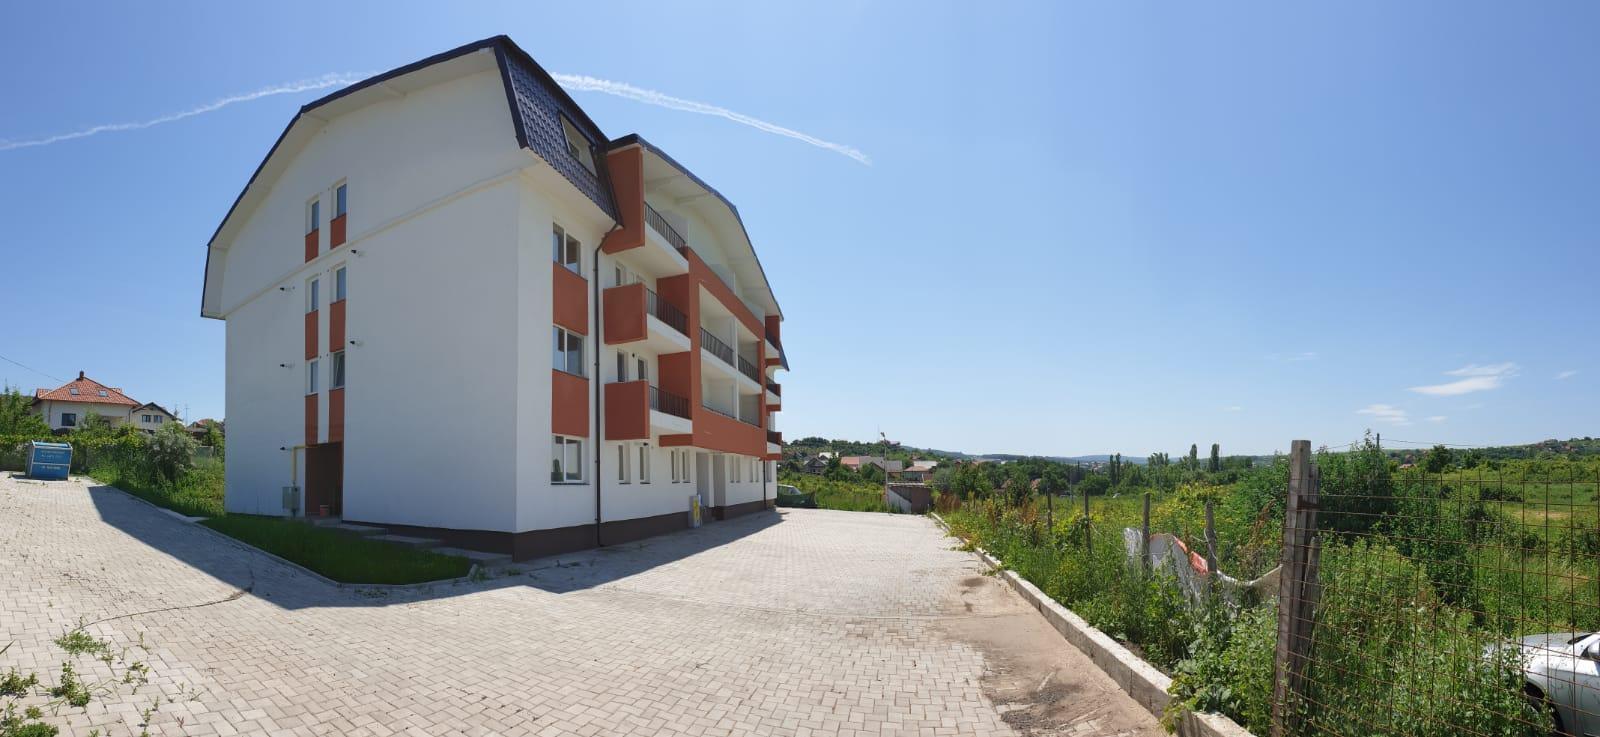 Eco Bucium Residence în Iași